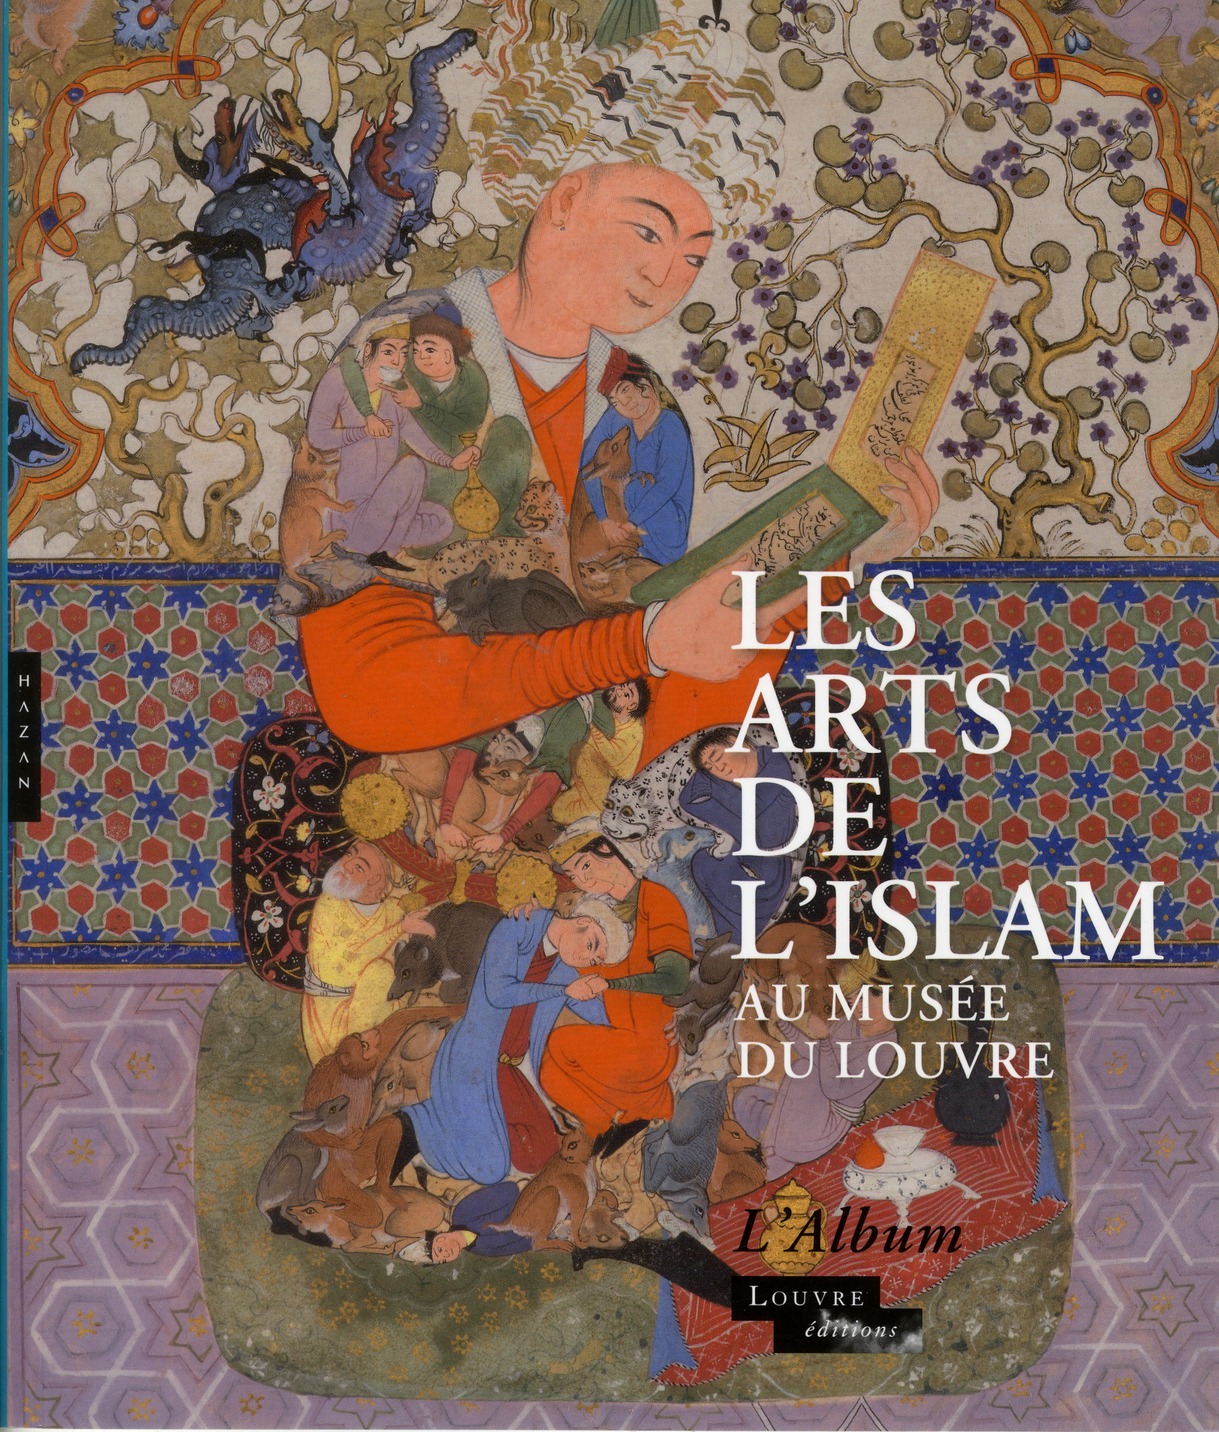 LES ARTS DE L'ISLAM AU MUSEE DU LOUVRE (ALBUM DE L'EXPOSITION)